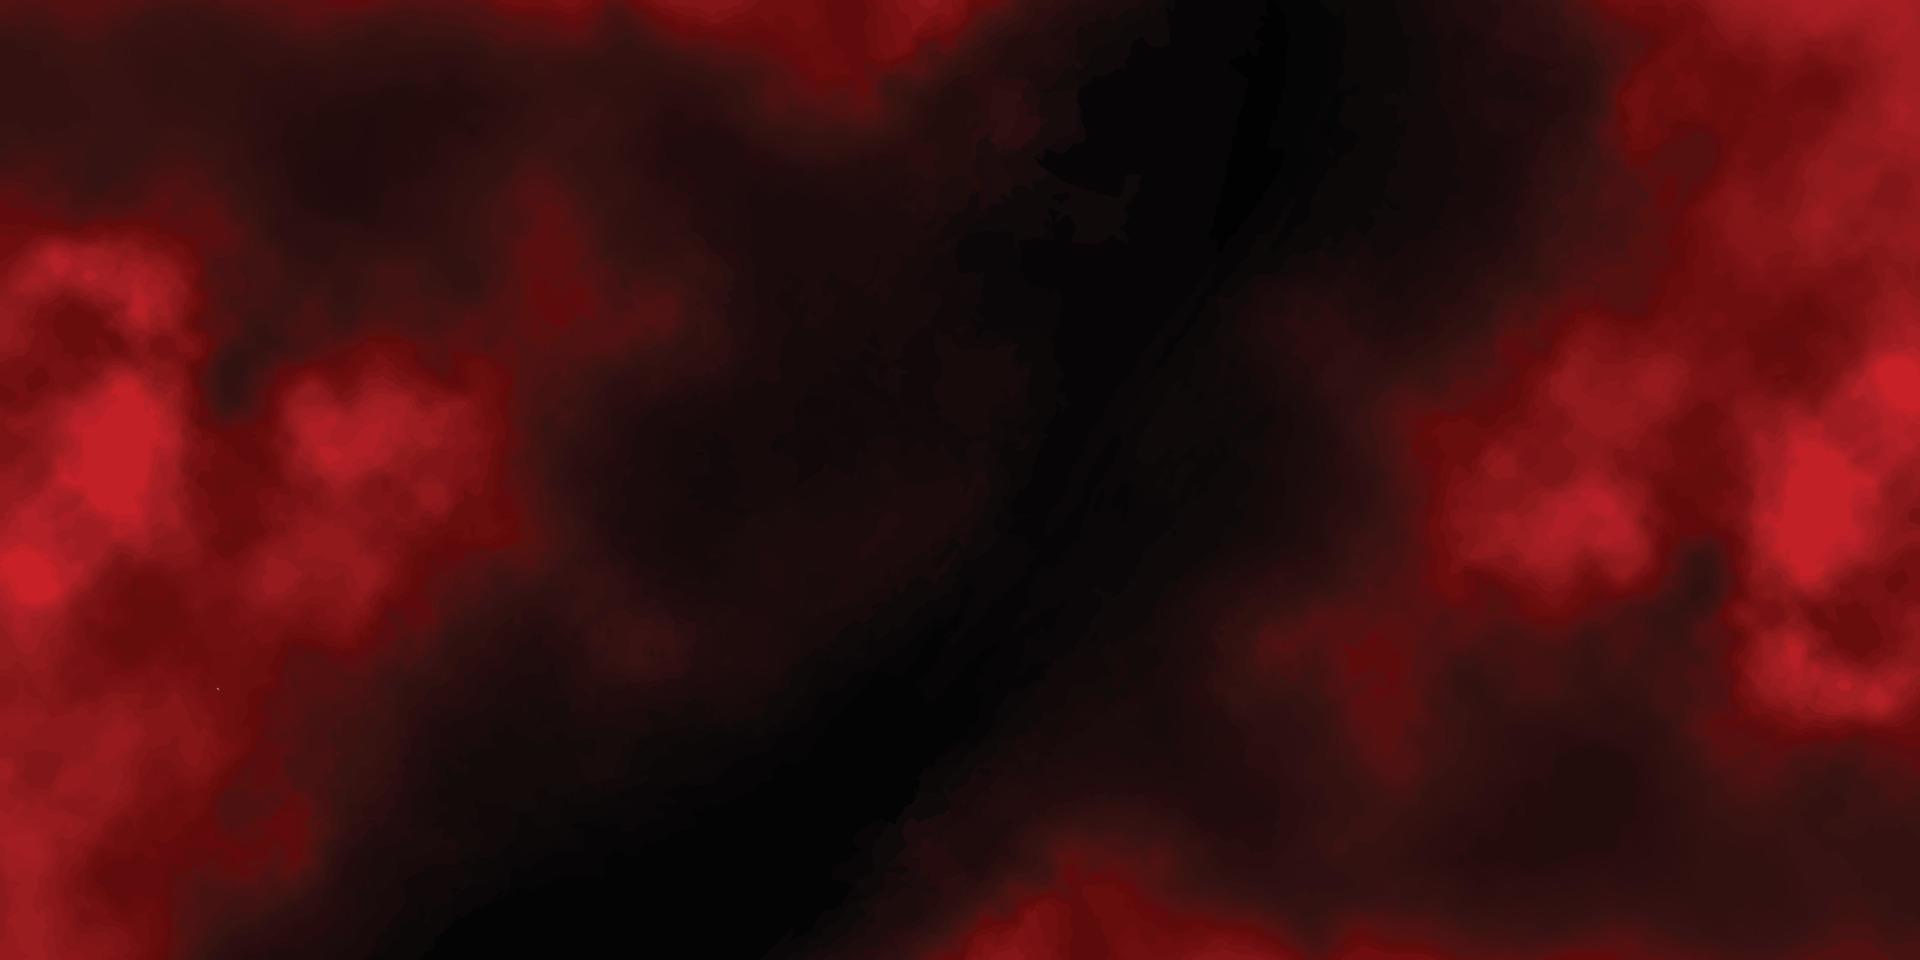 röd grunge bakgrund med Plats för text, abstrakt vattenfärg röd grunge bakgrund målning, röd cement vägg med mörk textur bakgrund, gammal texturerad svart och röd hand målad grunge bakgrund vektor